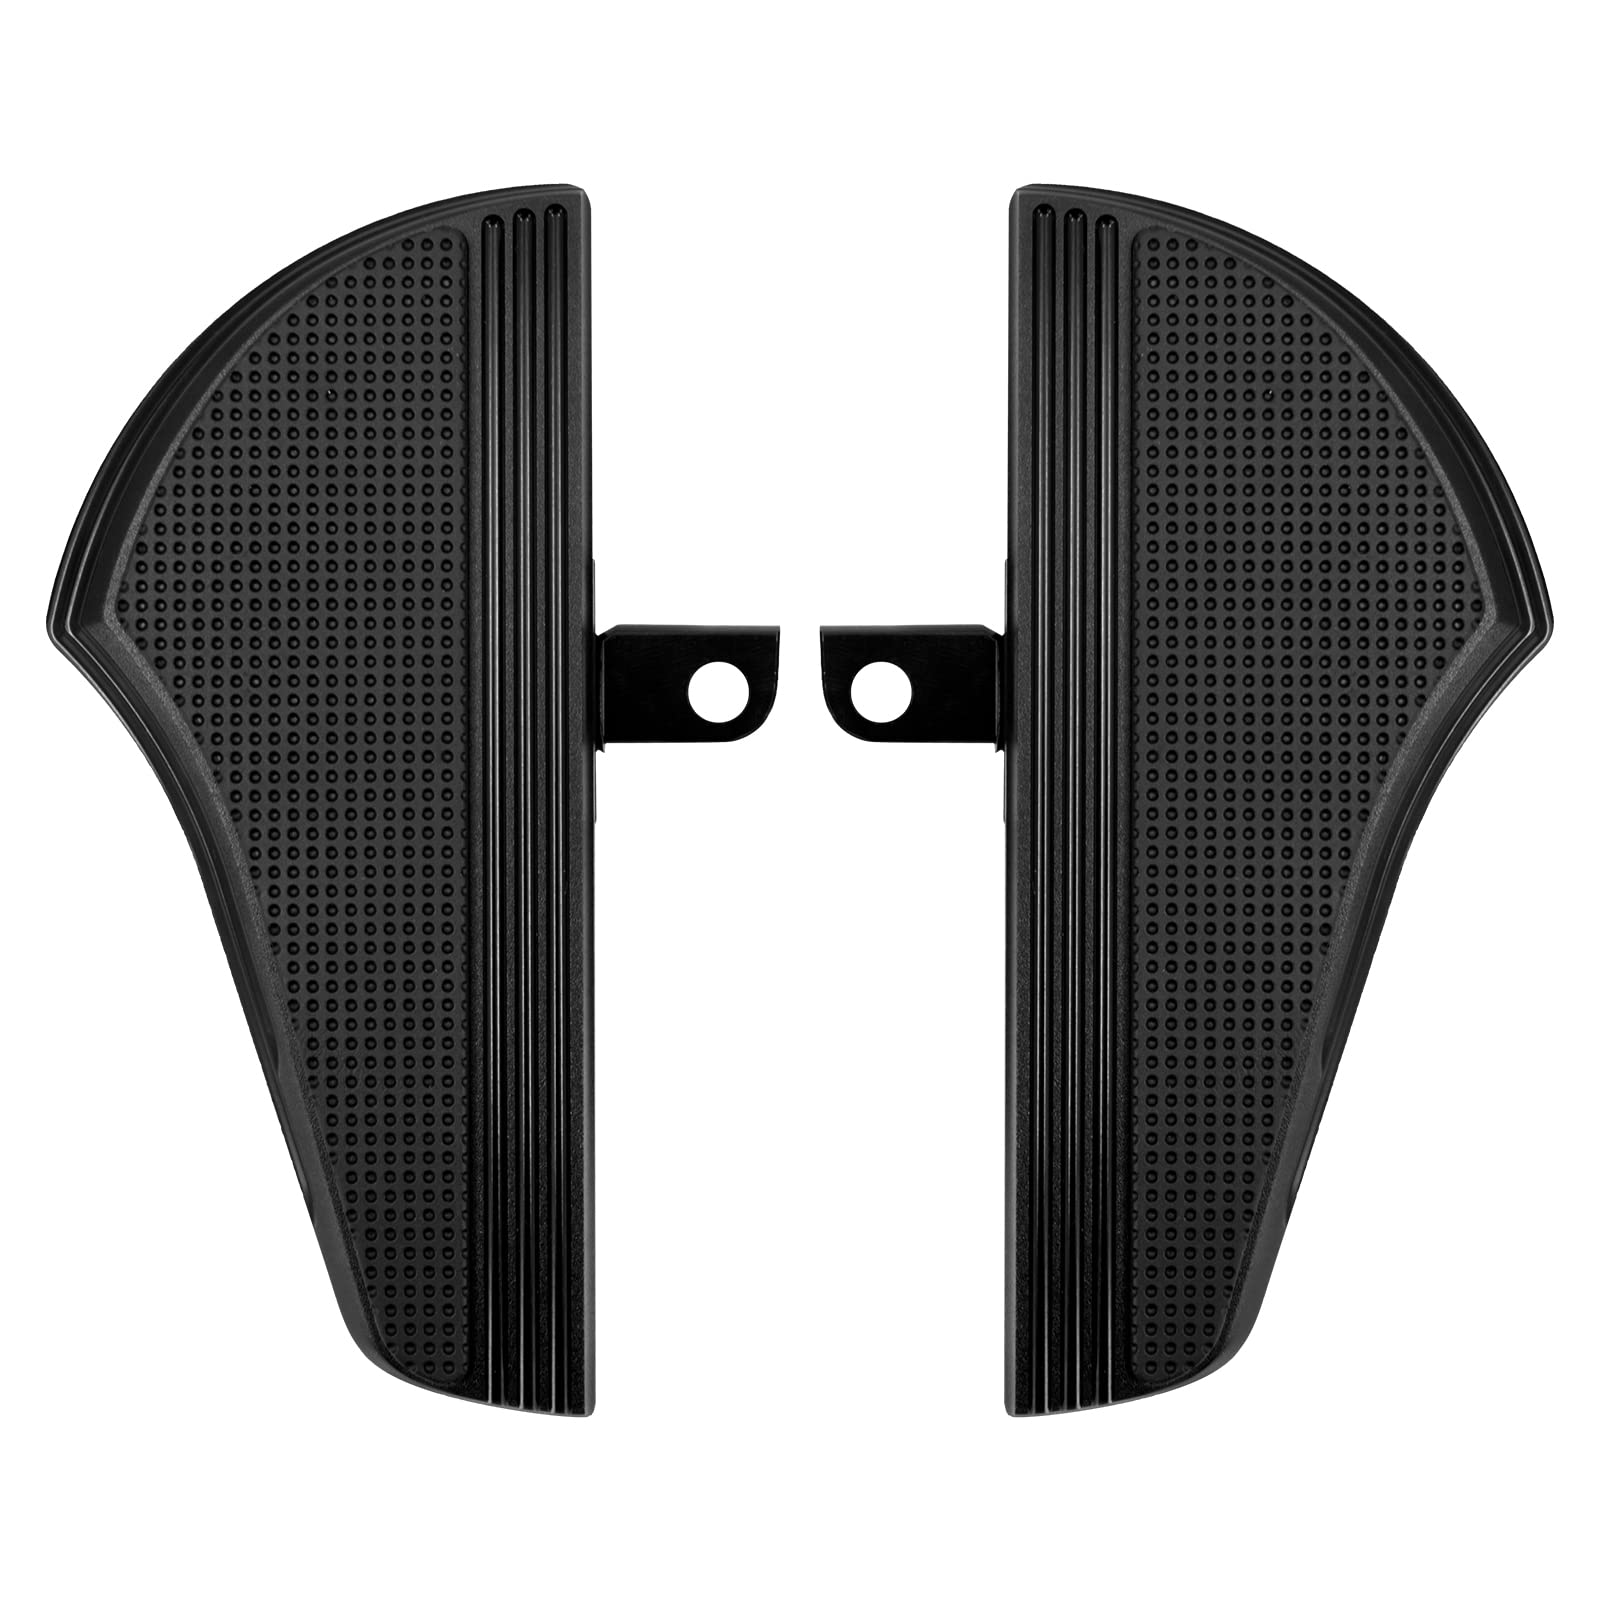 HDBUBALUS Motorrad-Fußbrett für Beifahrer, schwarz, CNC-Stecker, Fußrasten, passend für Harley Touring Softail